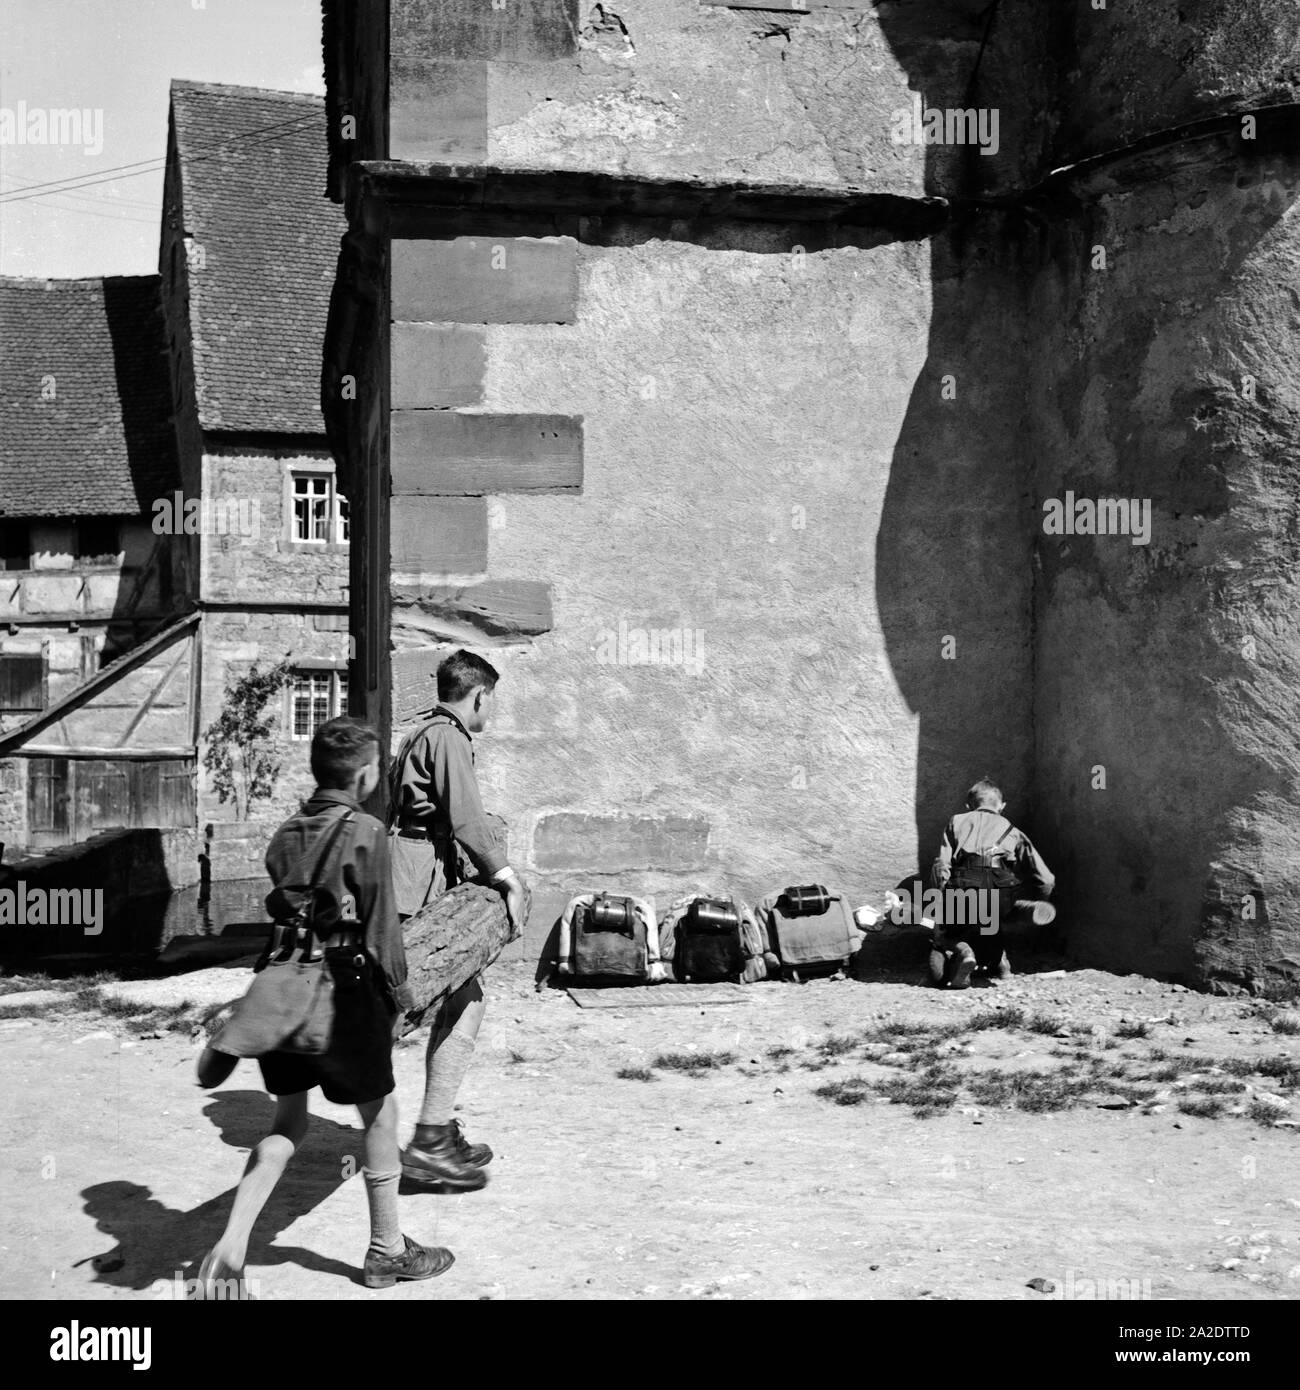 Drei Hitlerjungen a Rothenburg ob der Tauber, Deutschland 1930er Jahre. Tre giovani di Hitler a Rothenburg ob der Tauber, Germania 1930s. Foto Stock